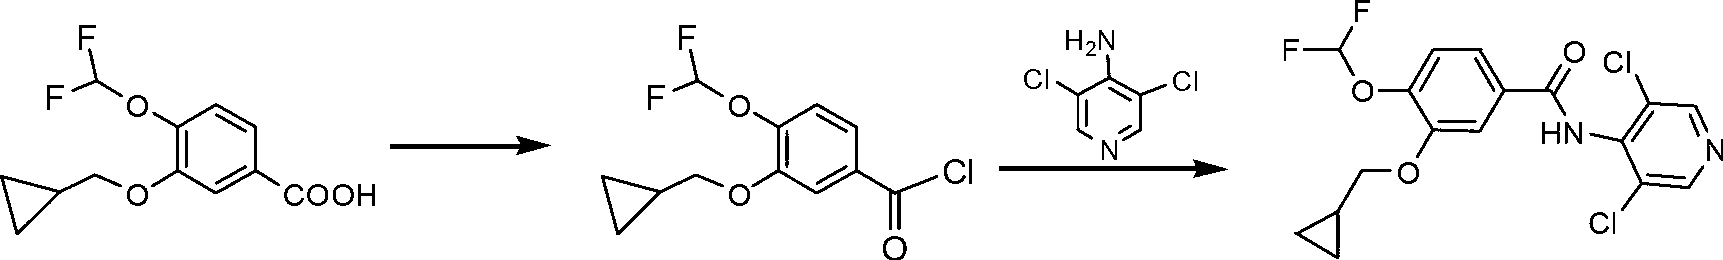 Method for synthesizing roflumilast